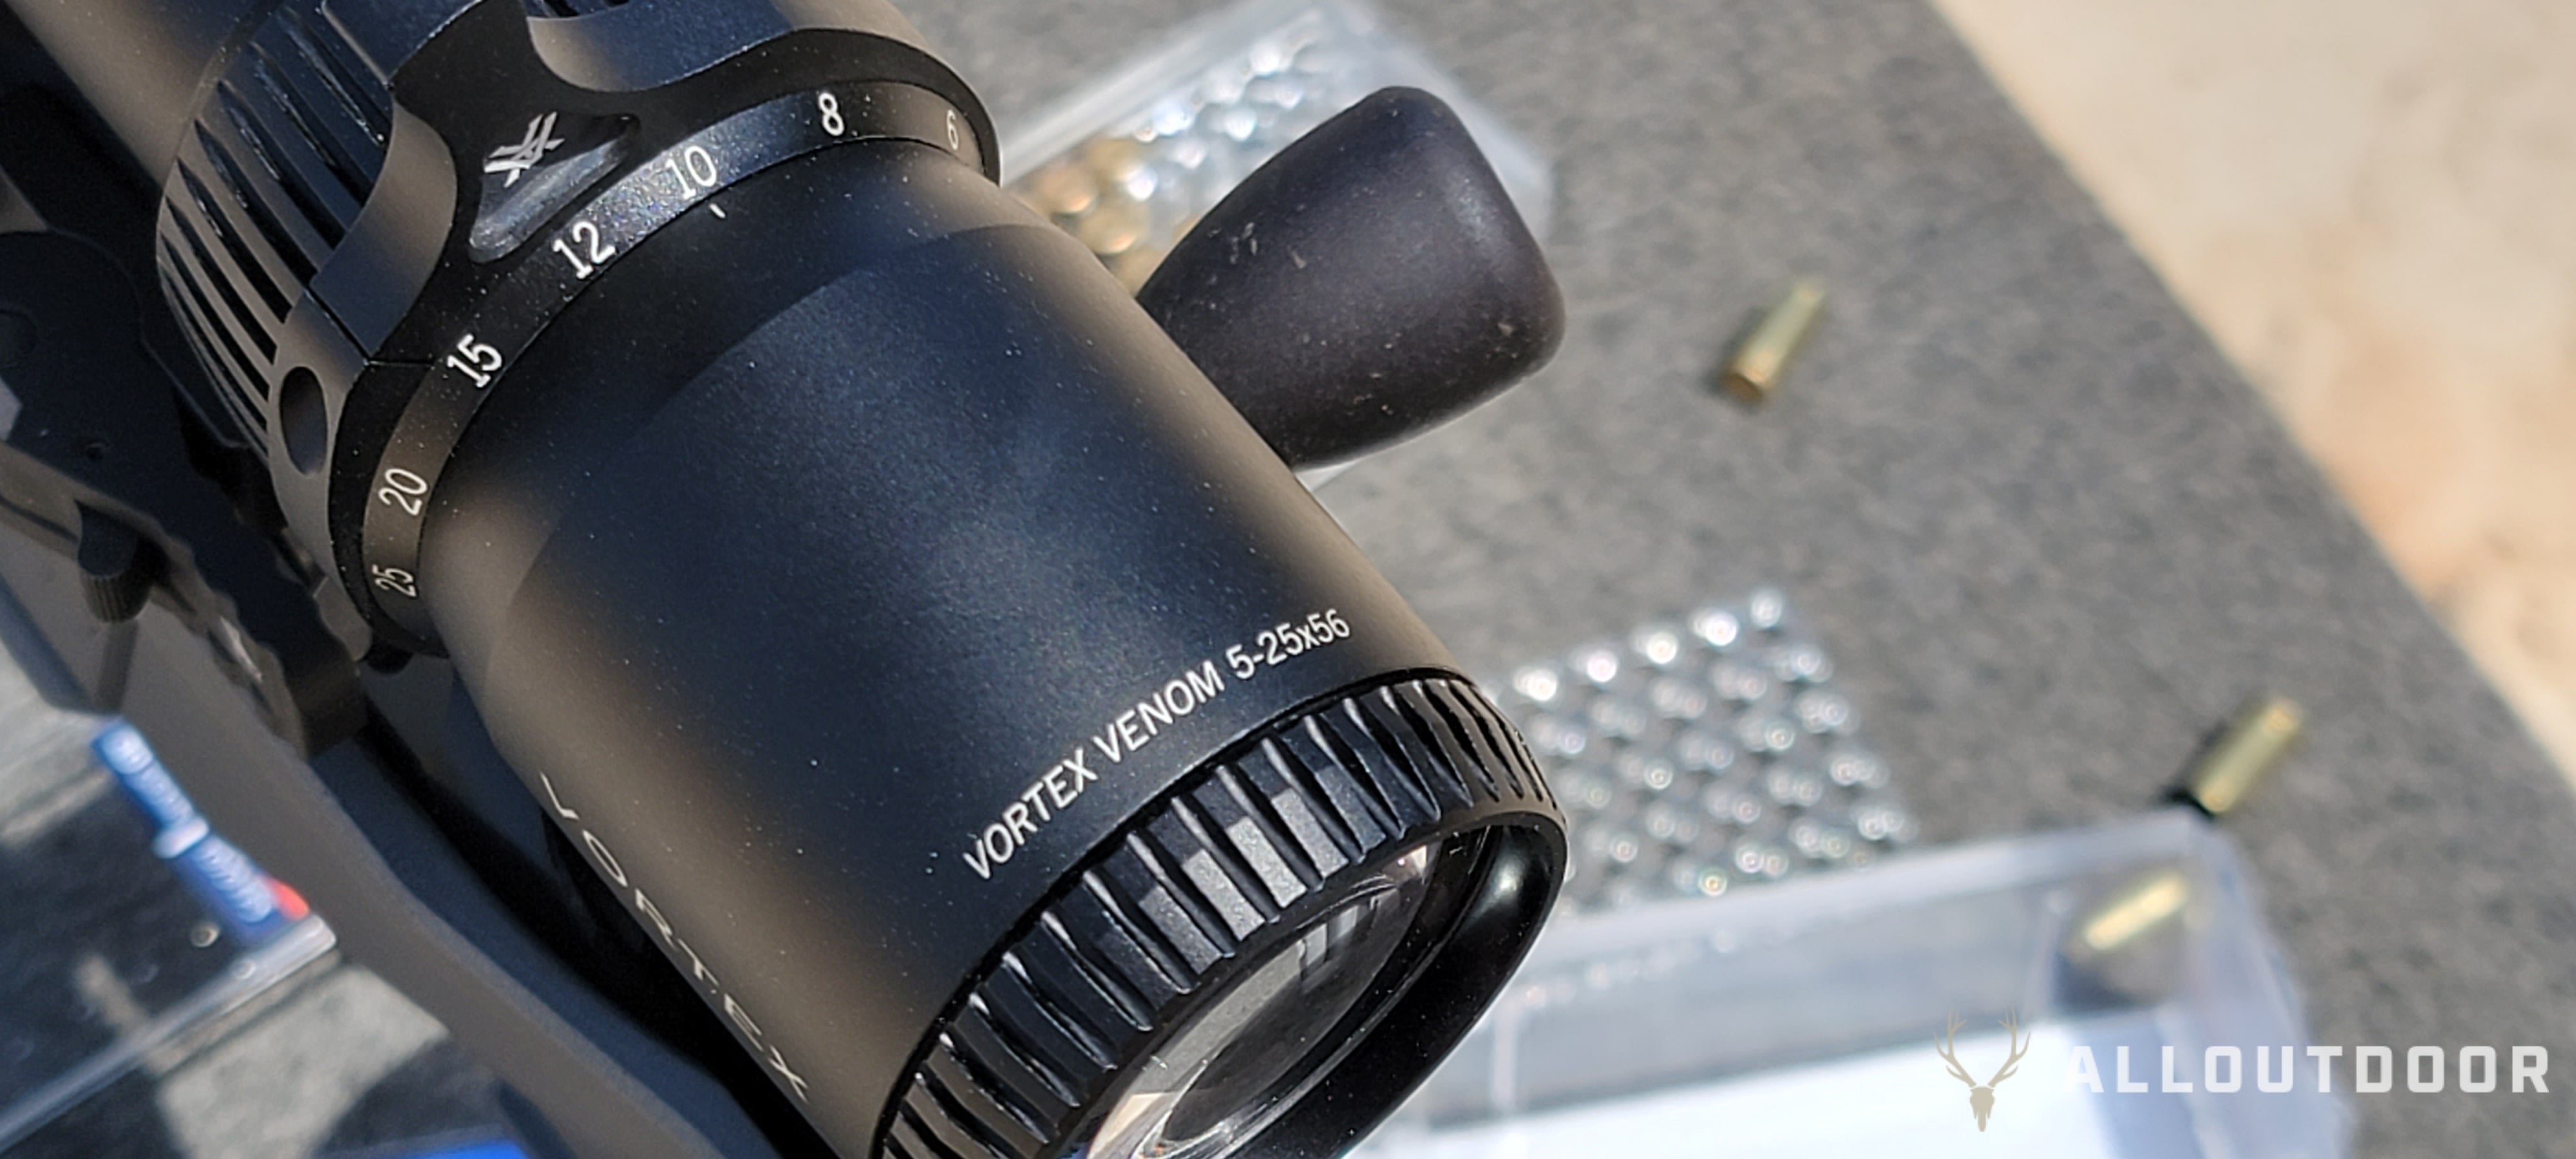 Review: The Vortex Venom 5-25x56 FFP Riflescope - Power on a Budget